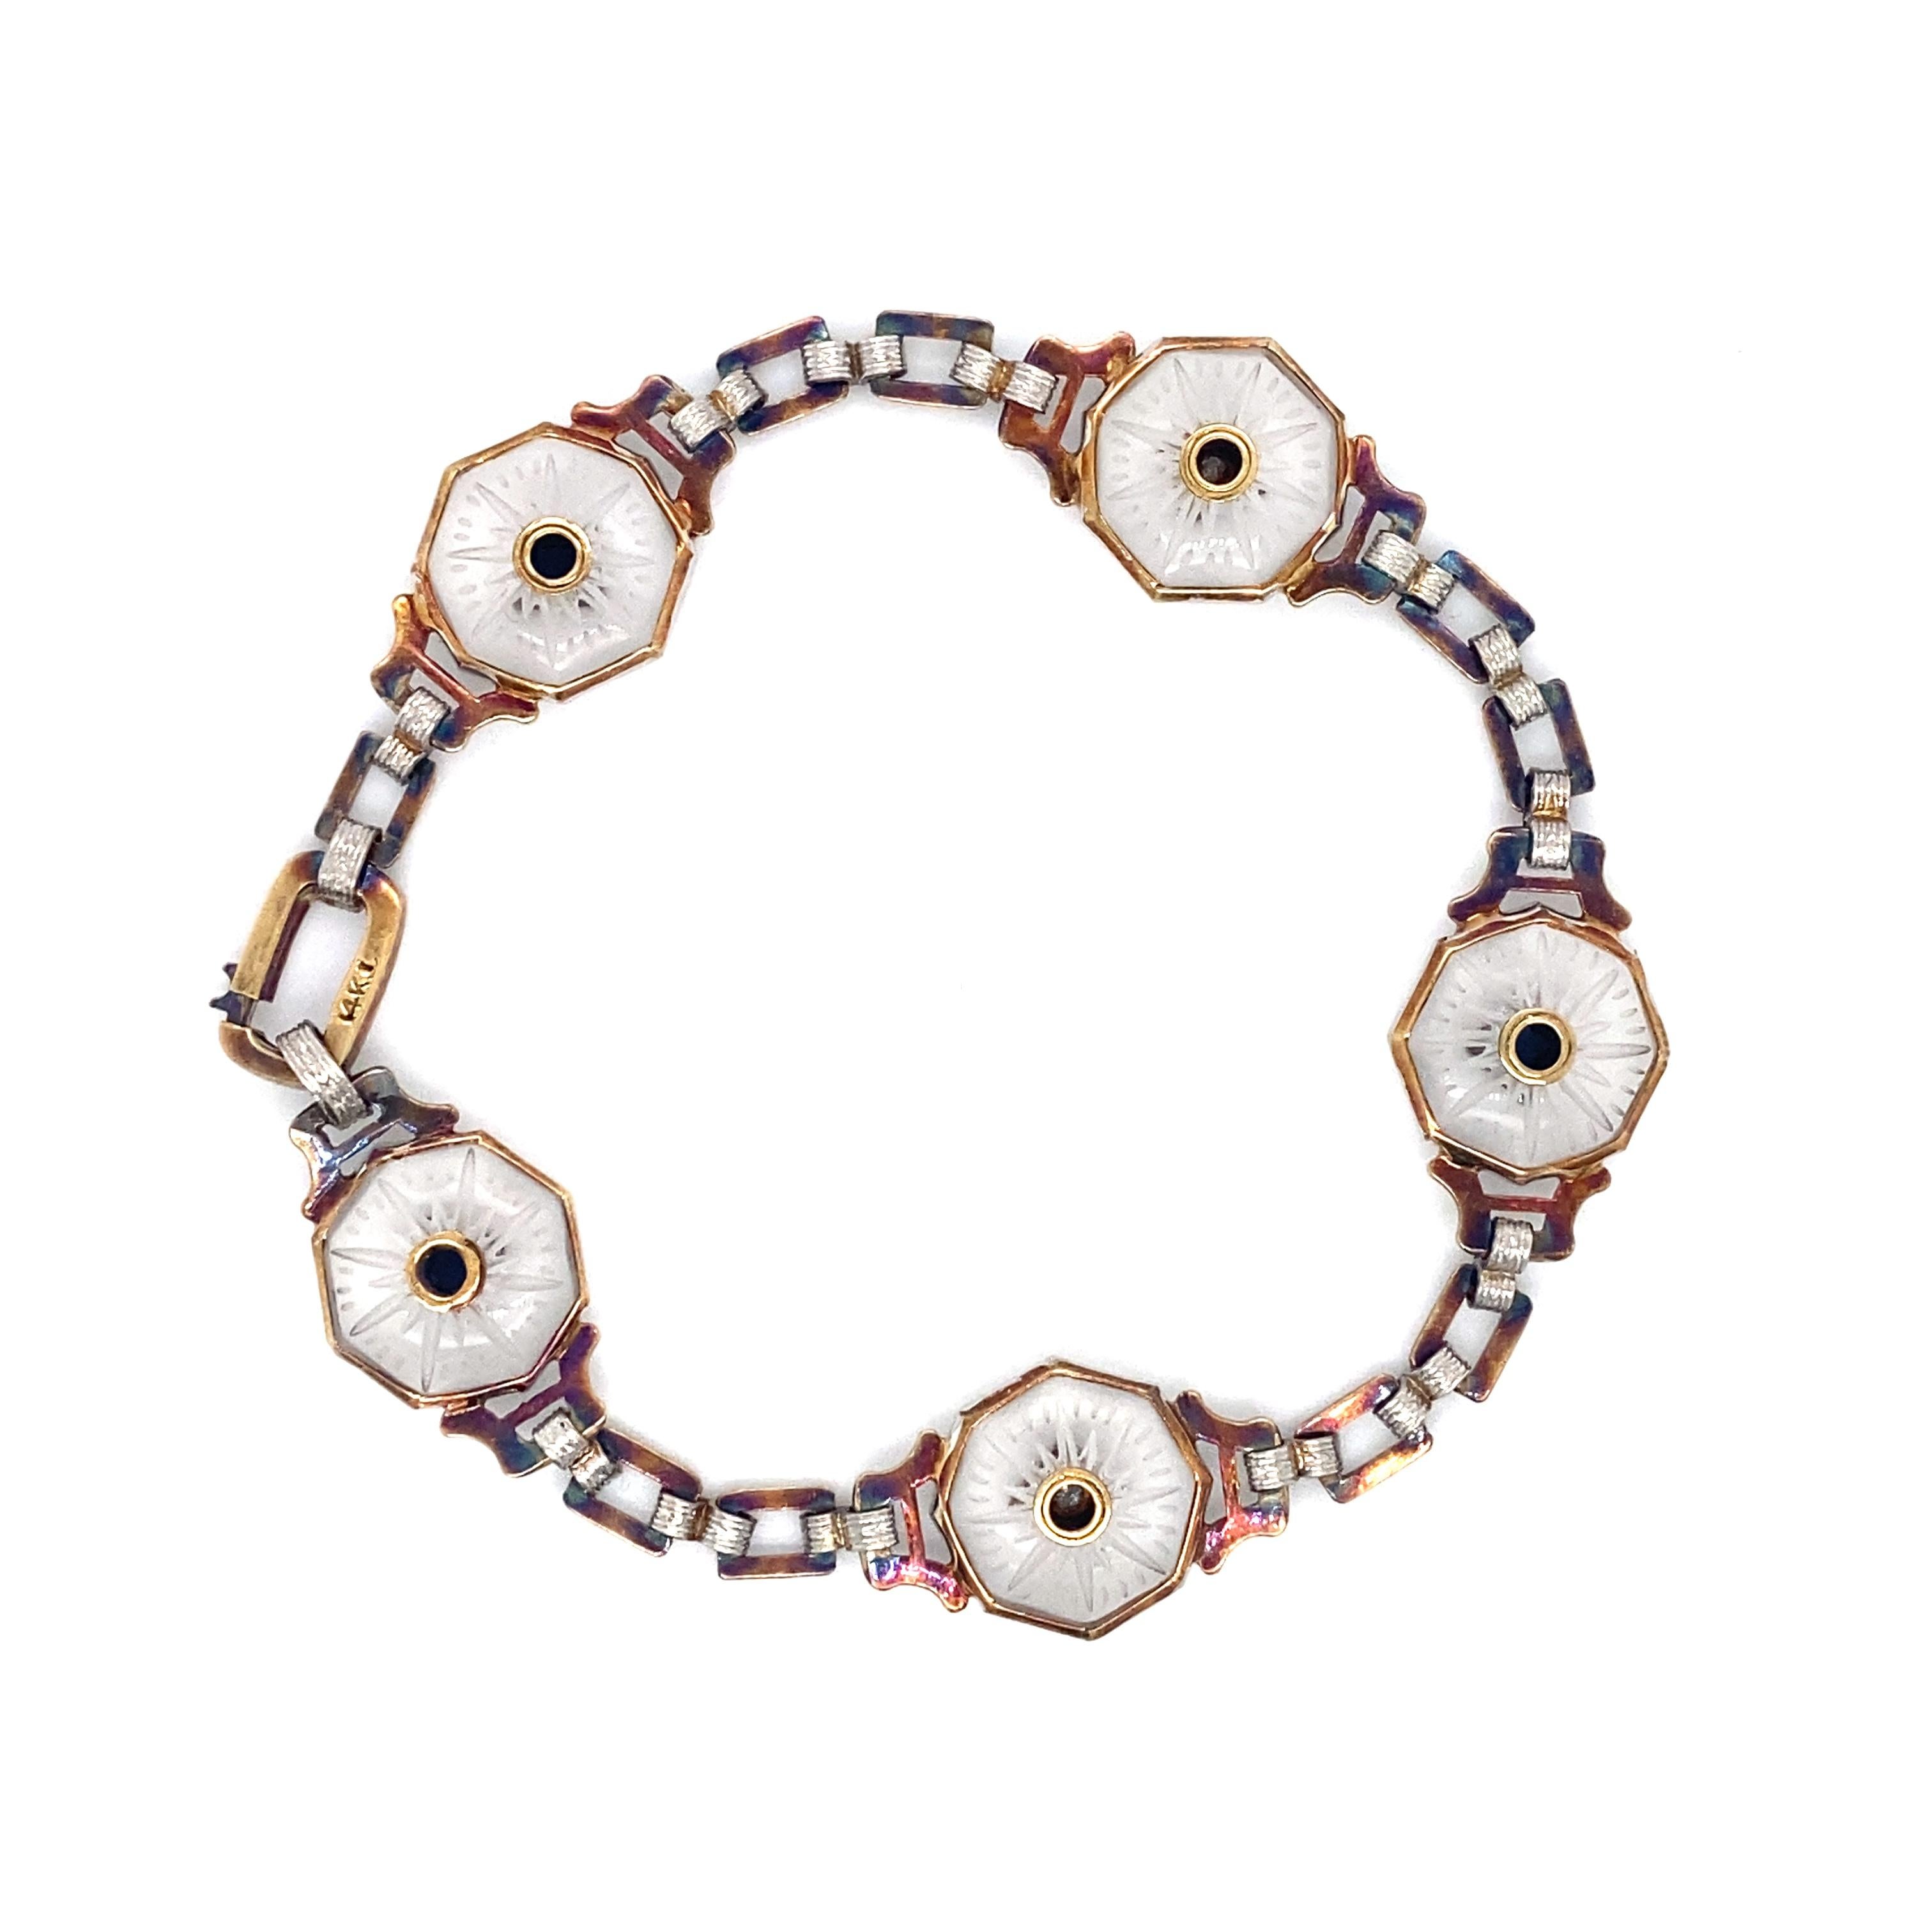 Artikeldetails: Dieses viktorianische Armband hat Glieder aus in der Lünette gefasstem Bergkristall mit abwechselnden Saphiren im französischen Schliff und Diamanten im Einzelschliff. Dies ist ein wunderschönes Stück mit schönem viktorianischem